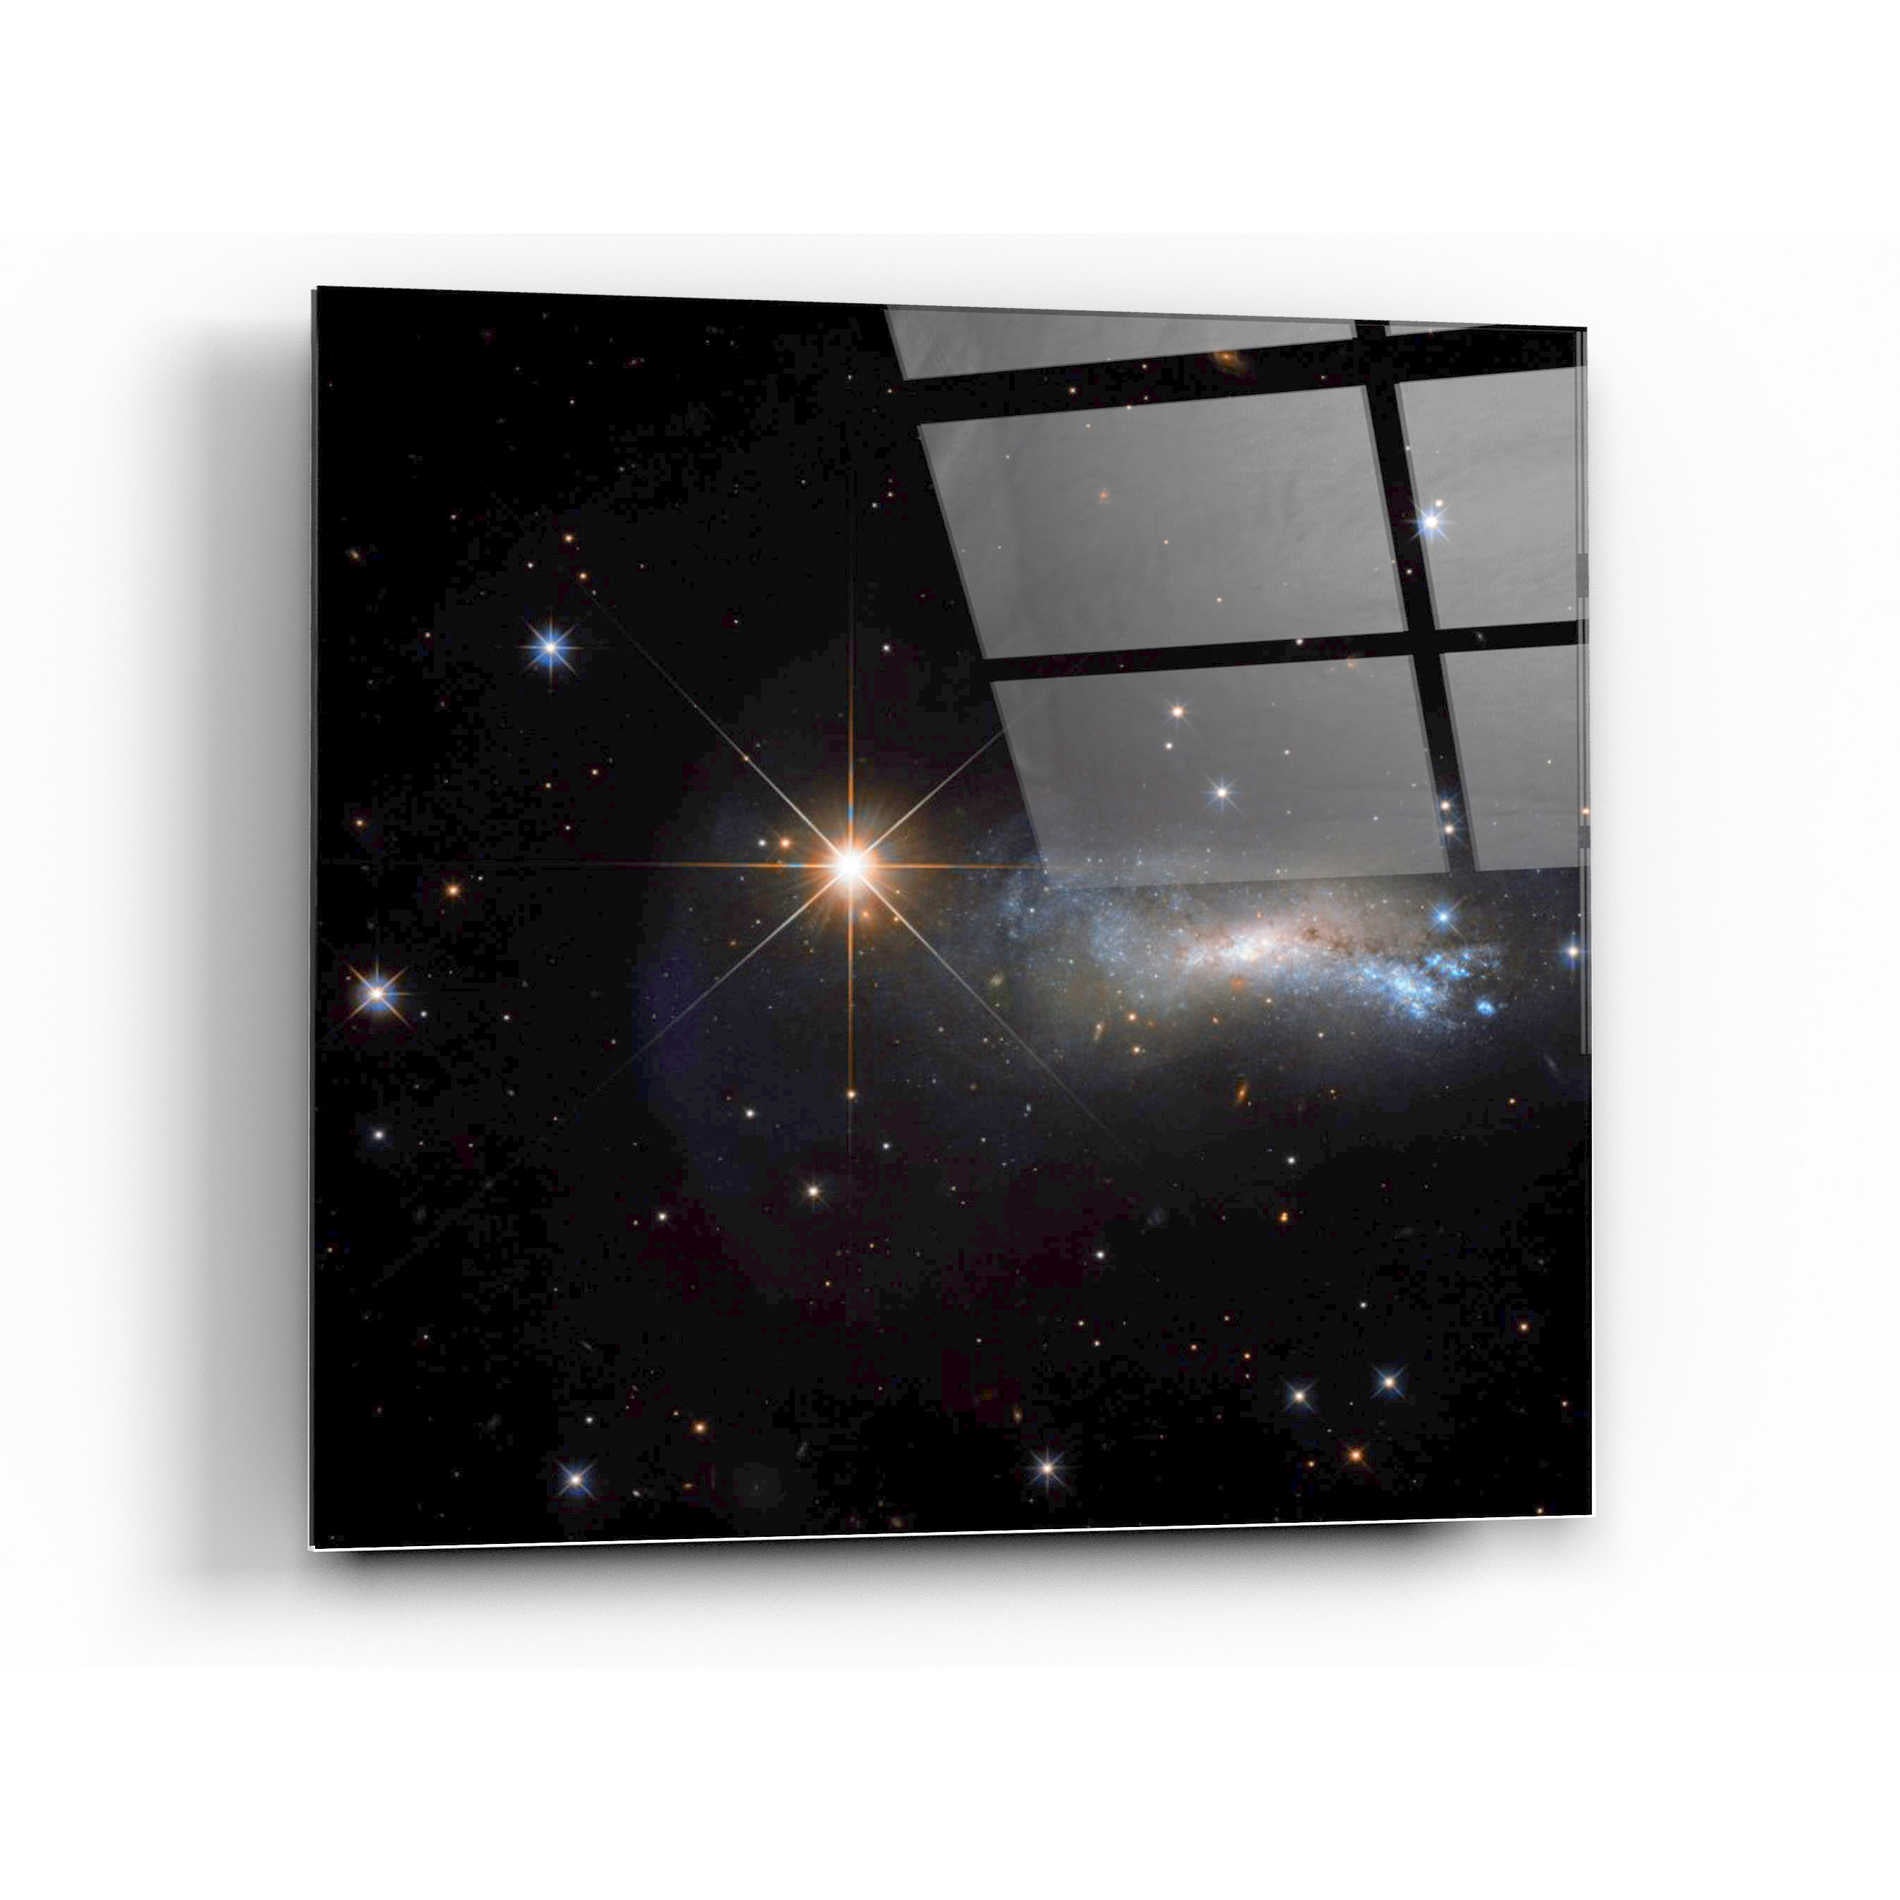 Epic Art "Outshine" Hubble Space Telescope Acrylic Glass Wall Art,36x36